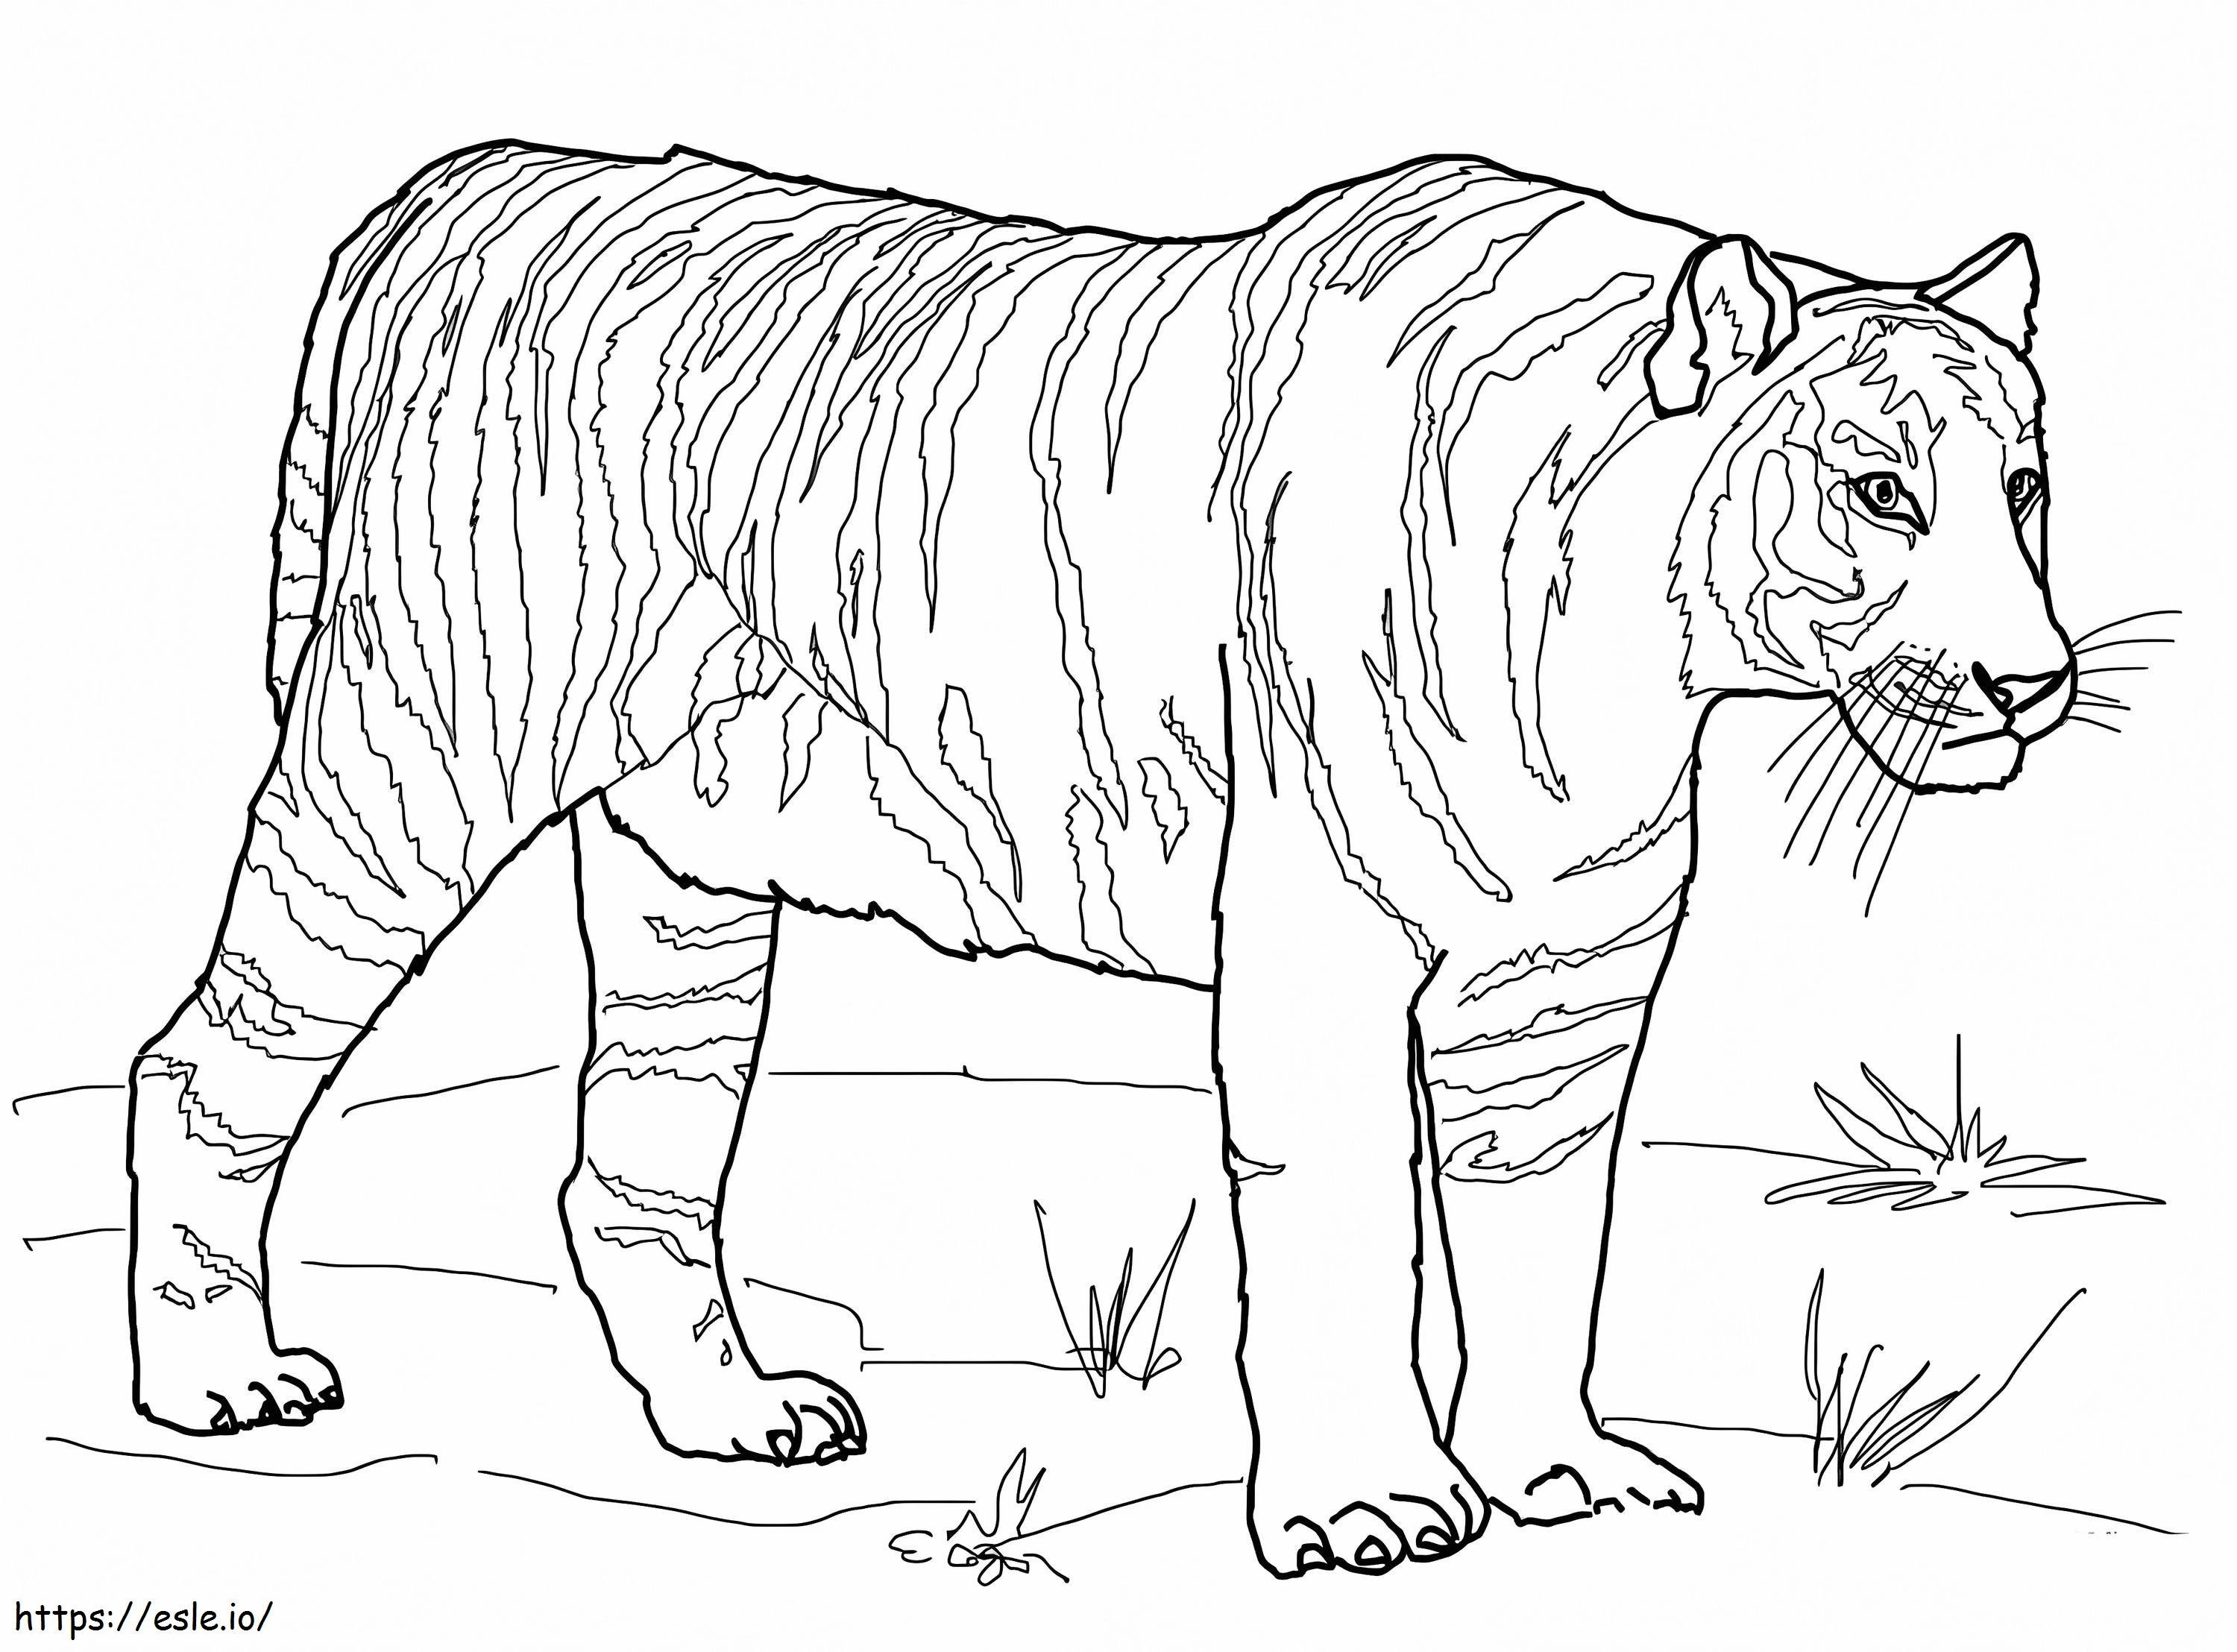 Bengaalse tijger kleurplaat kleurplaat